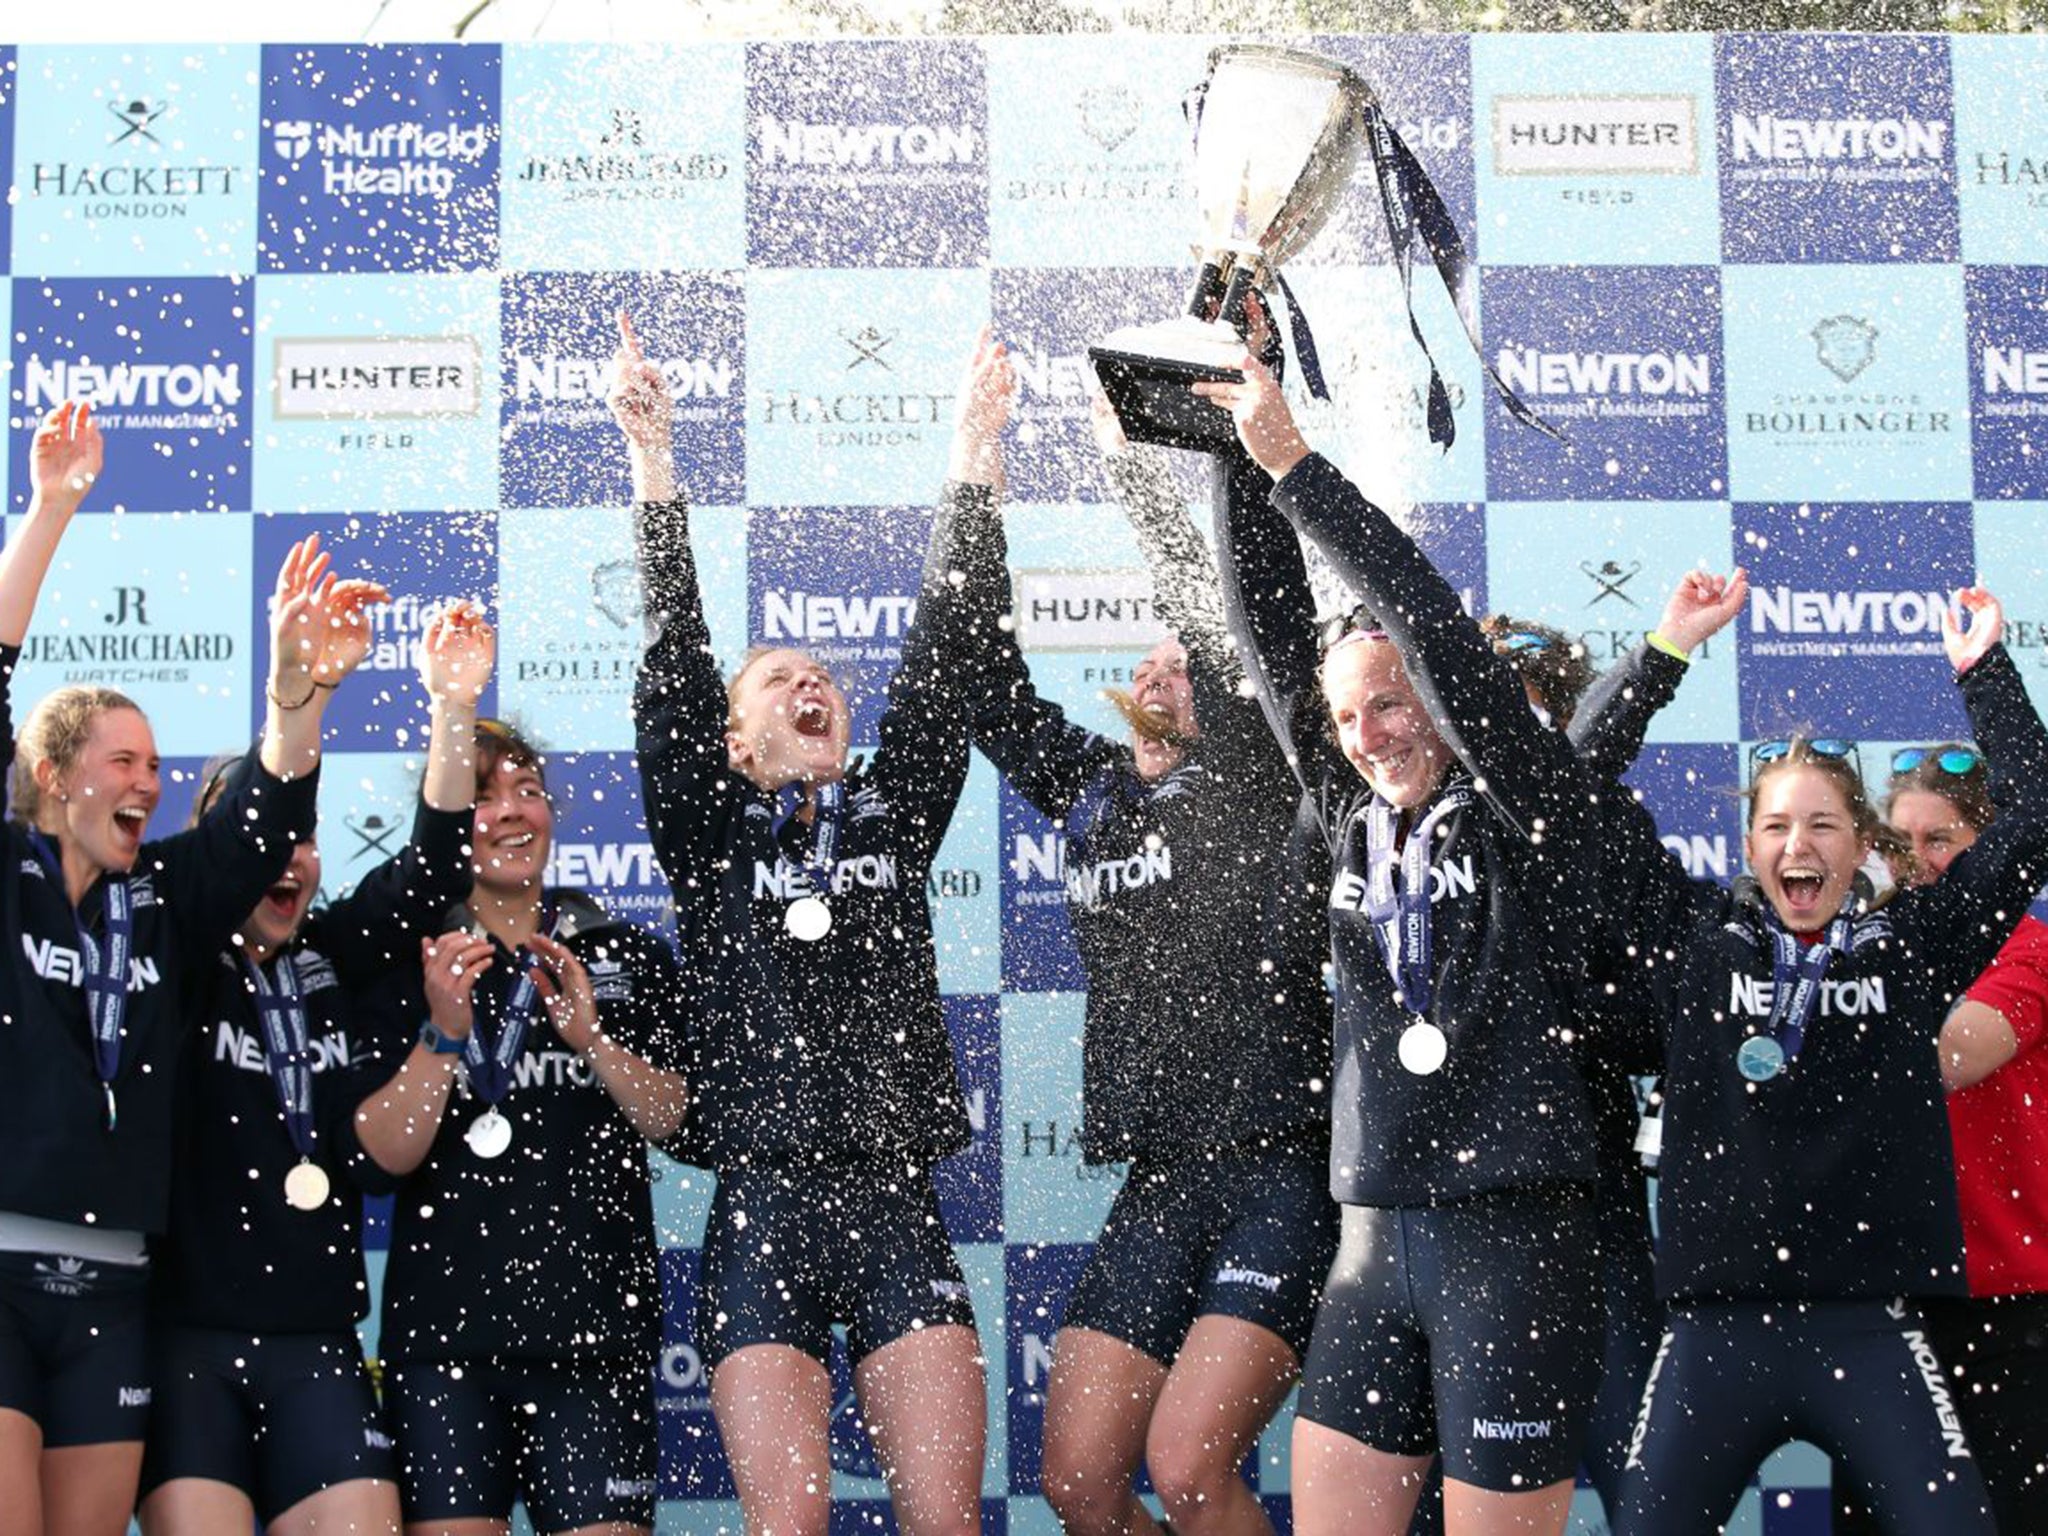 Oxford celebrate winning the Women’s Boat Race